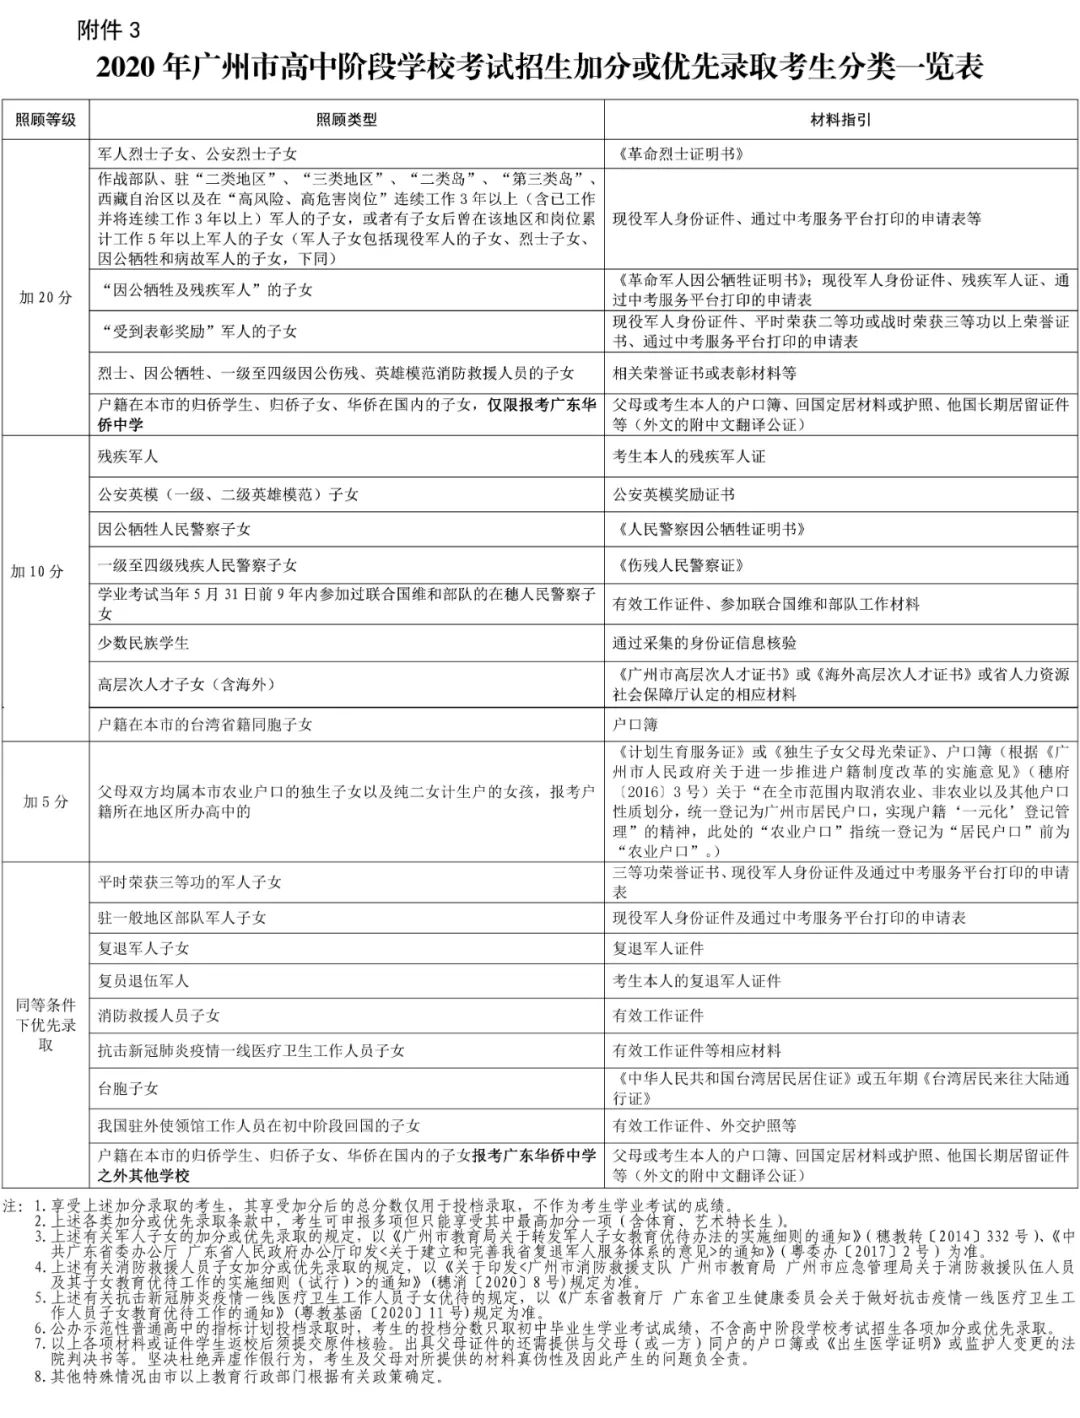 2020年广州市中考招生报名工作通知15